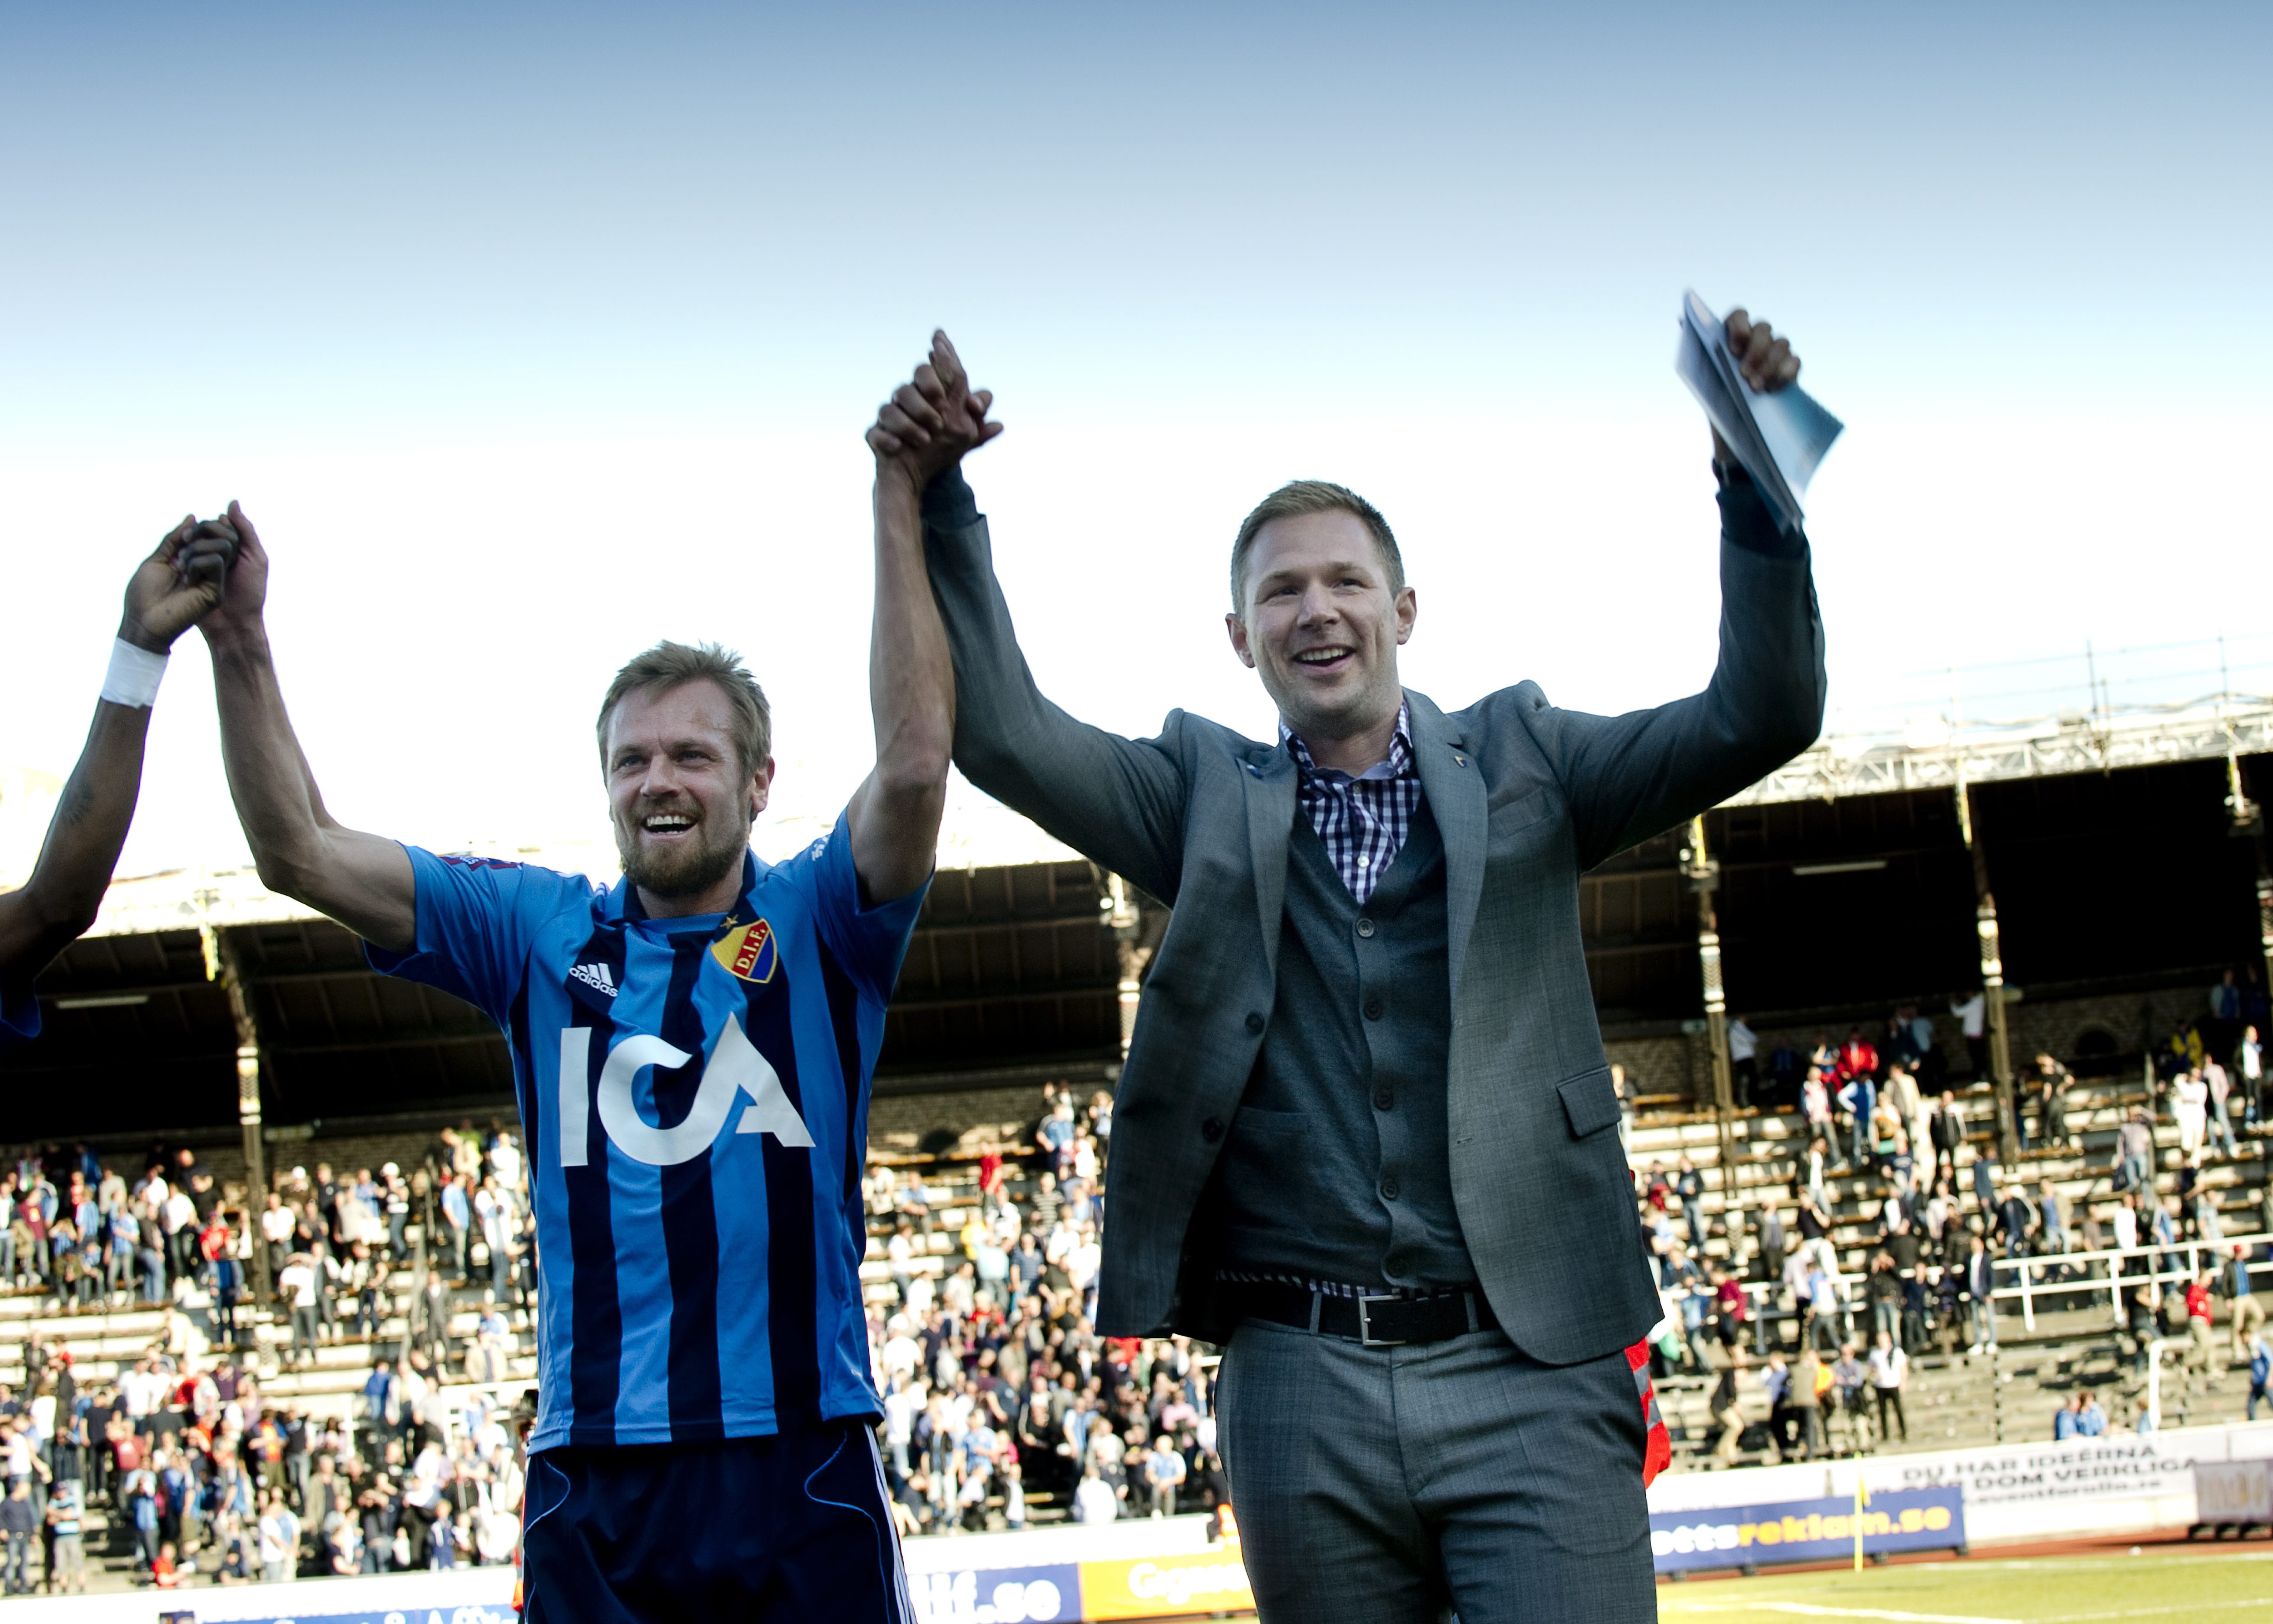 Får Mattias Jonson och Magnus Pehrsson fira med de tillresta supportrarna efter torsdagens match?